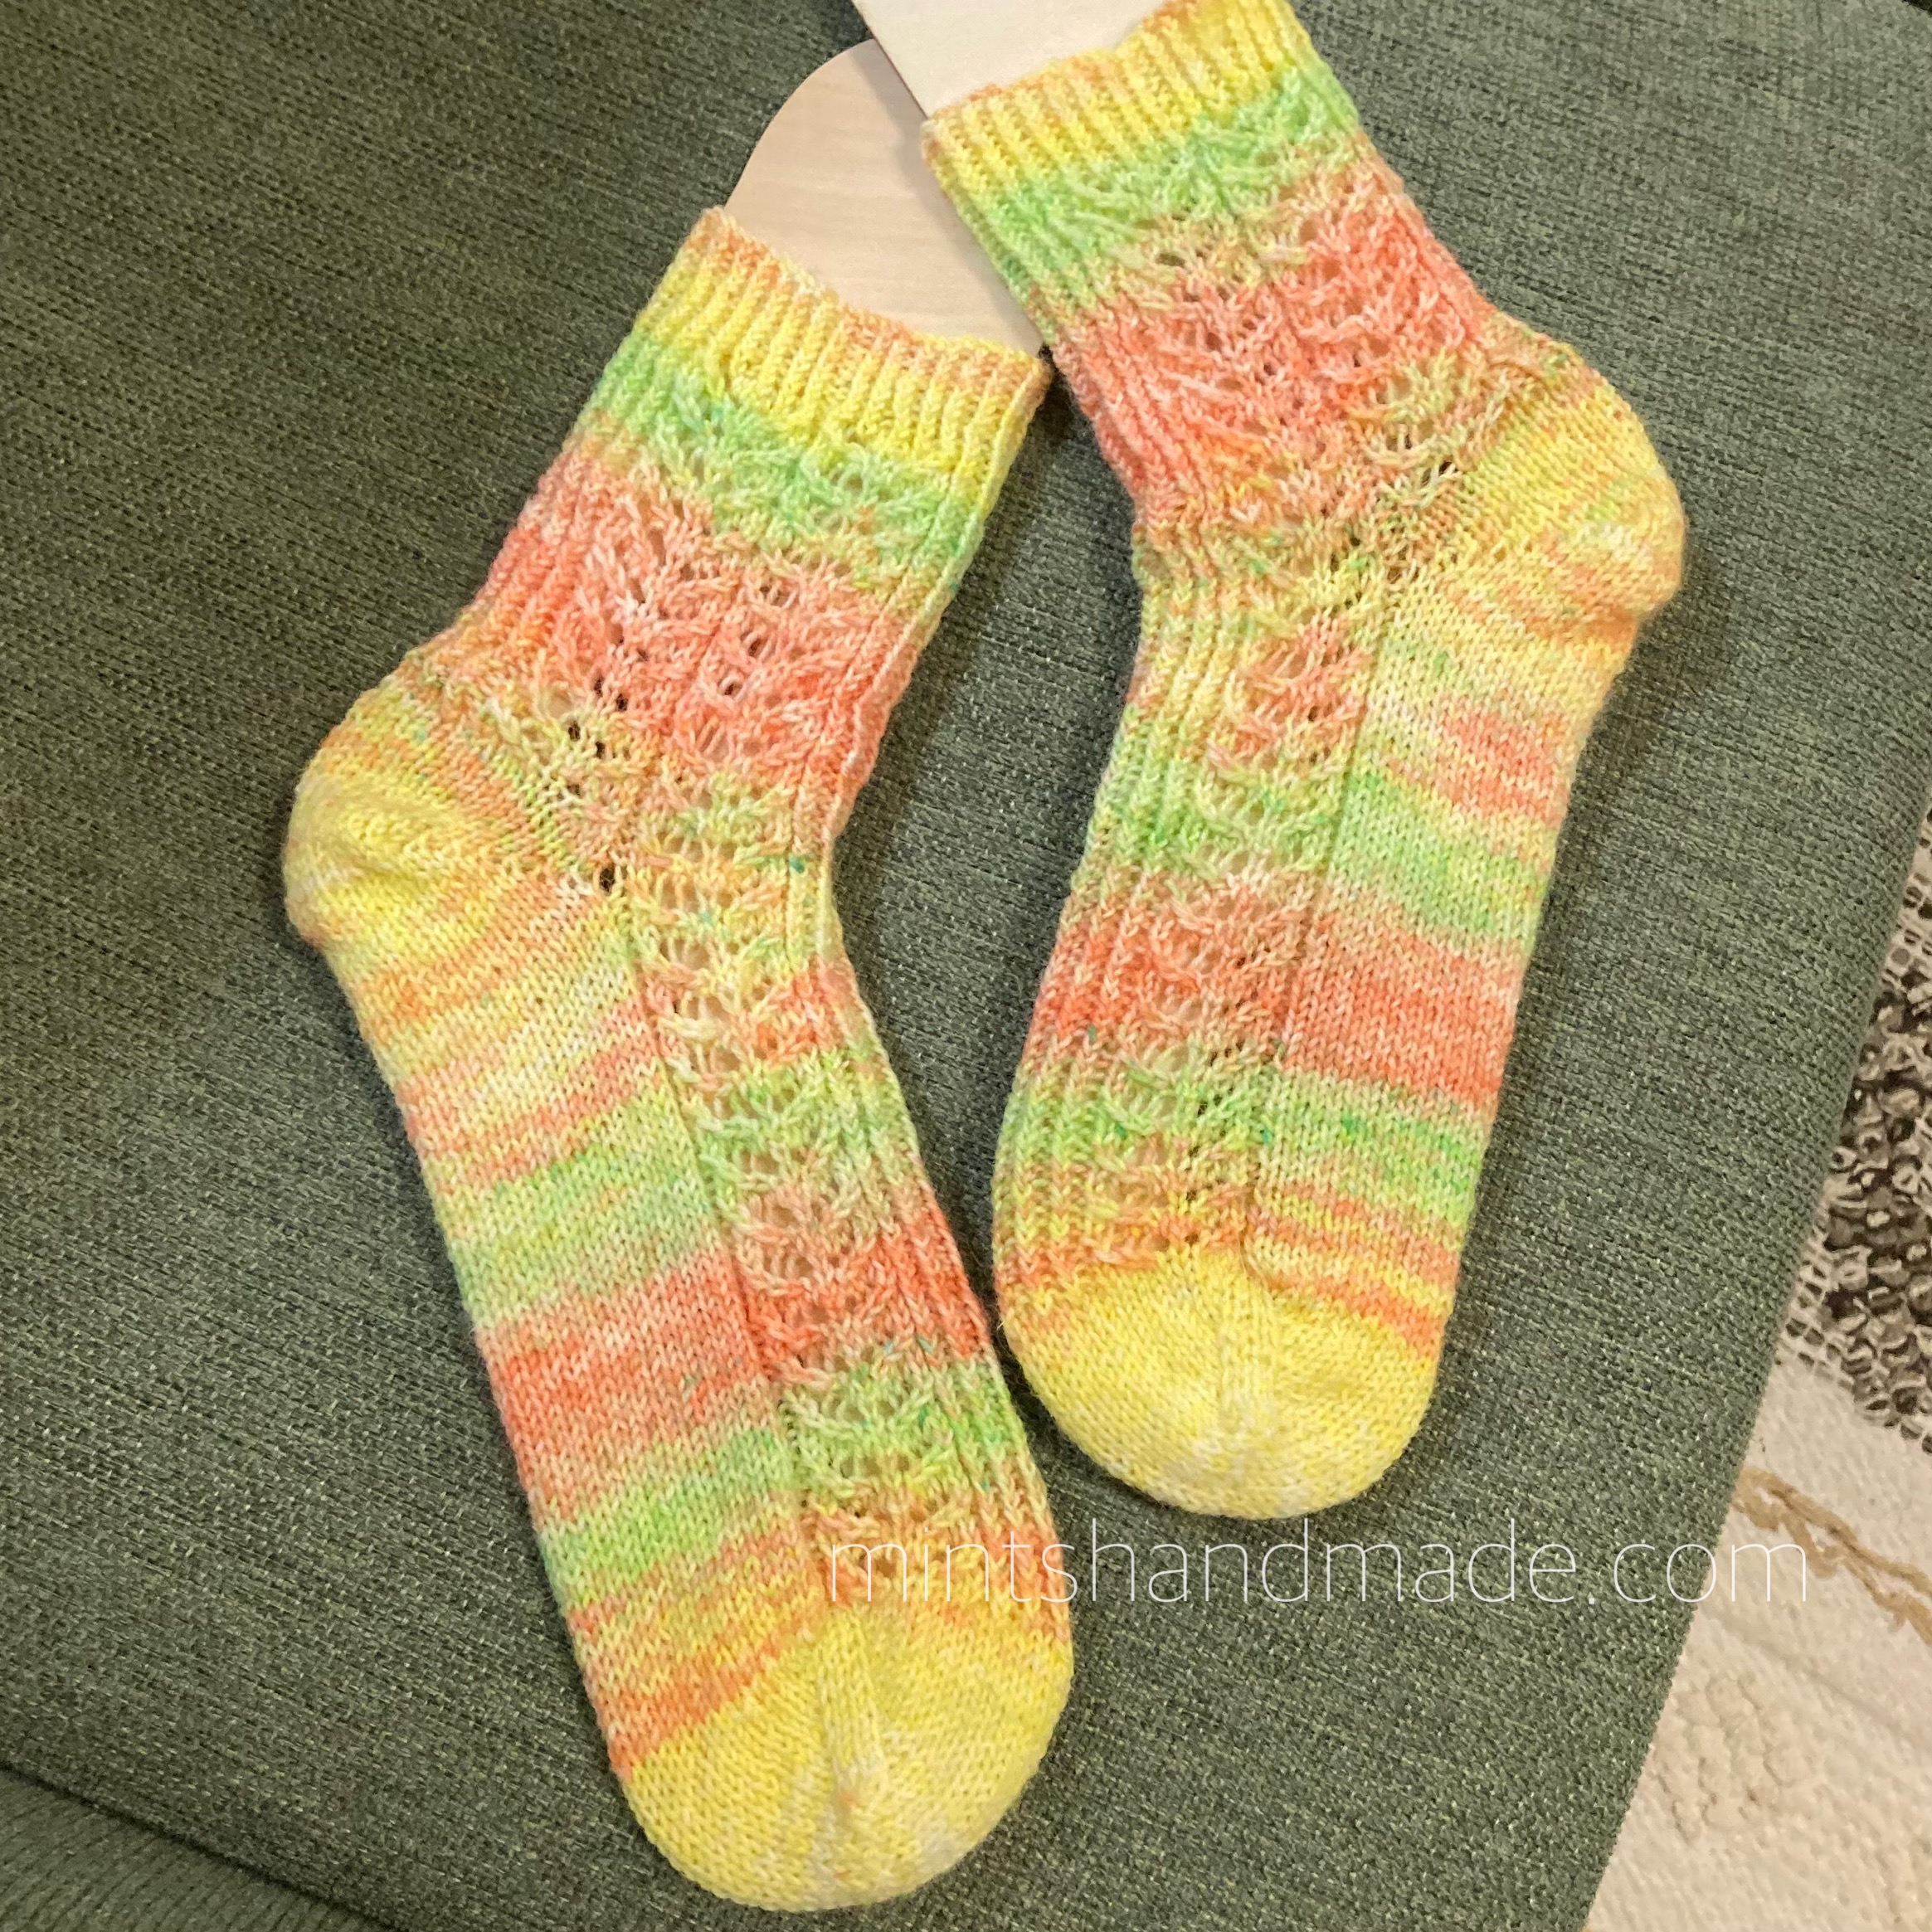 ソックブランクを染めた手編みの靴下完成